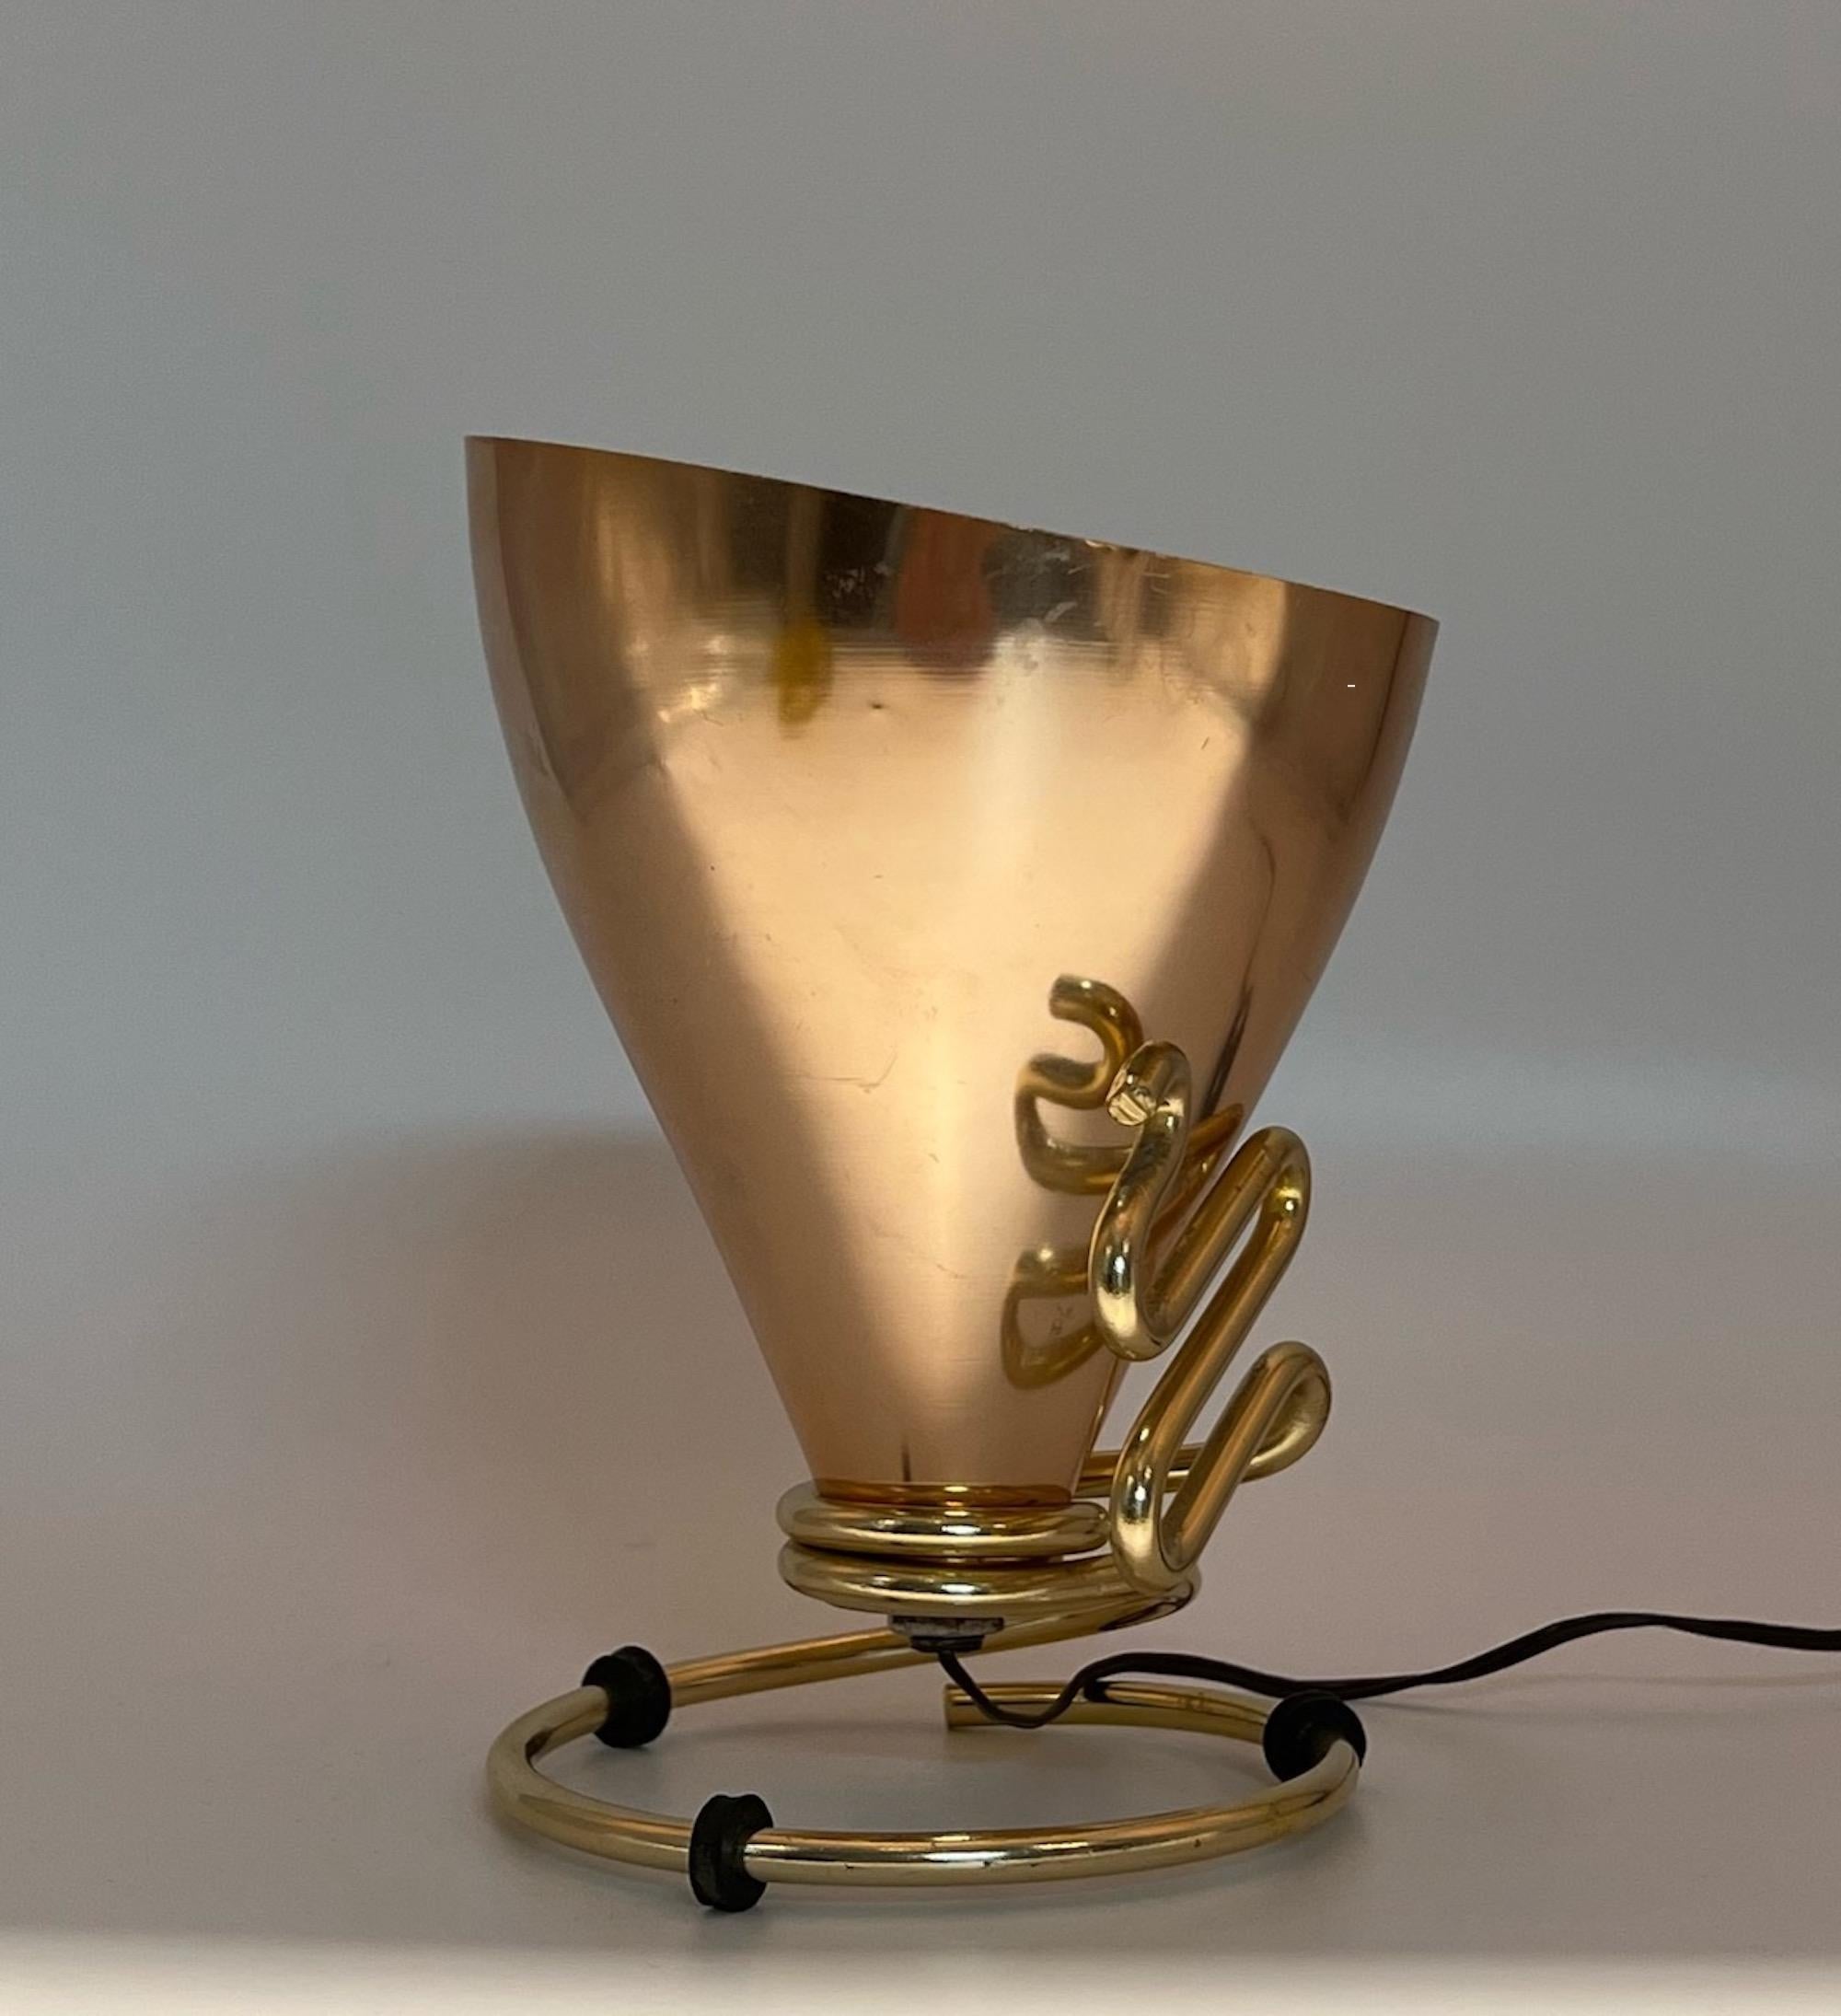 Lampe rare et iconique conçue par le génie créatif d'Ettore Sottsass et produite par Rinnovel.

Abat-jour conique distinctif en aluminium de couleur dorée brillante, soutenu par un cadre métallique représentant un serpent.

Cette lampe a été conçue